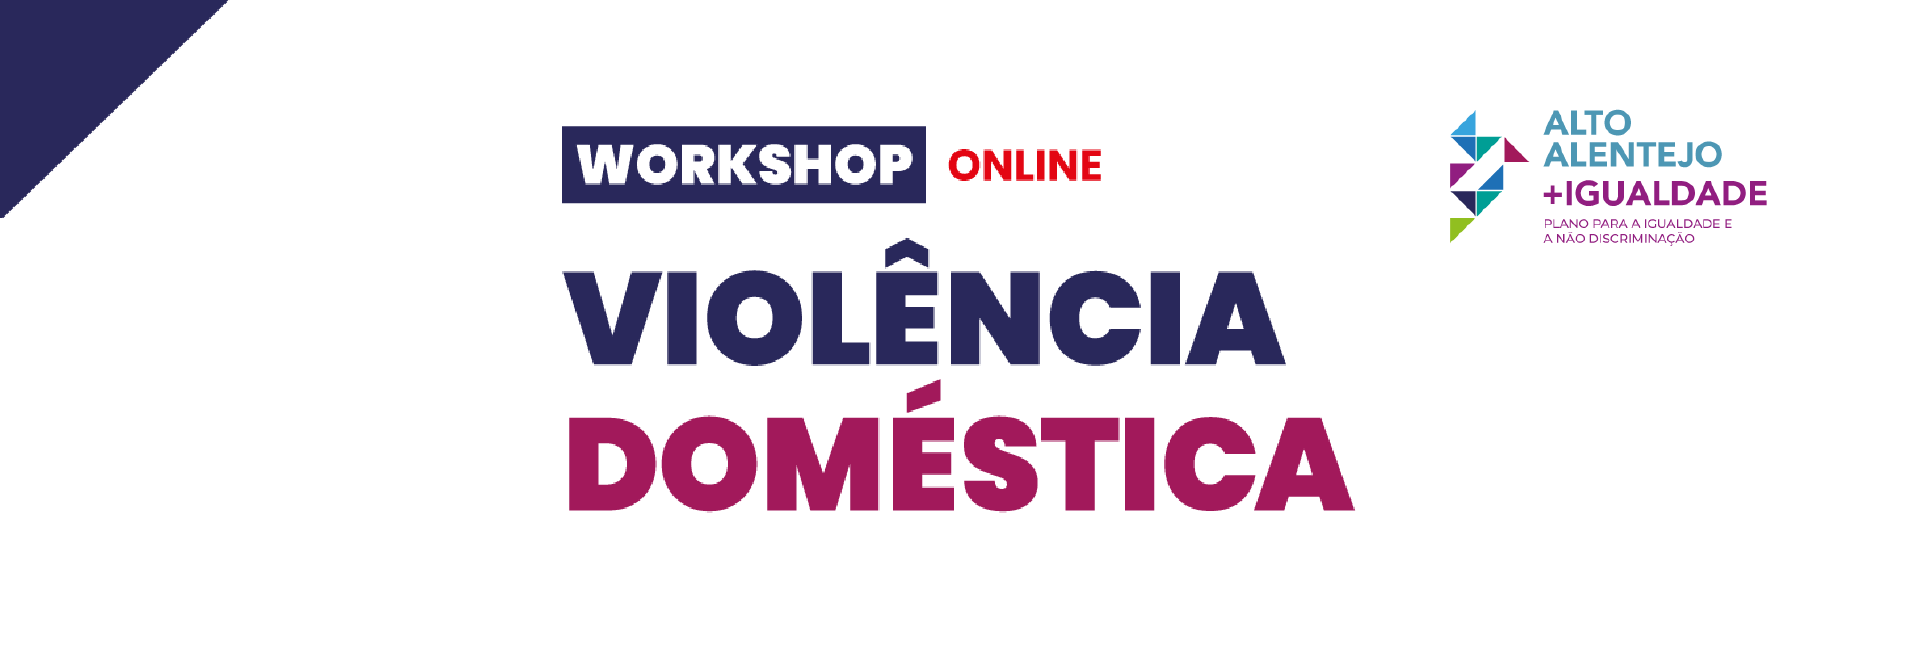 (Português) Workshop Violência Doméstica